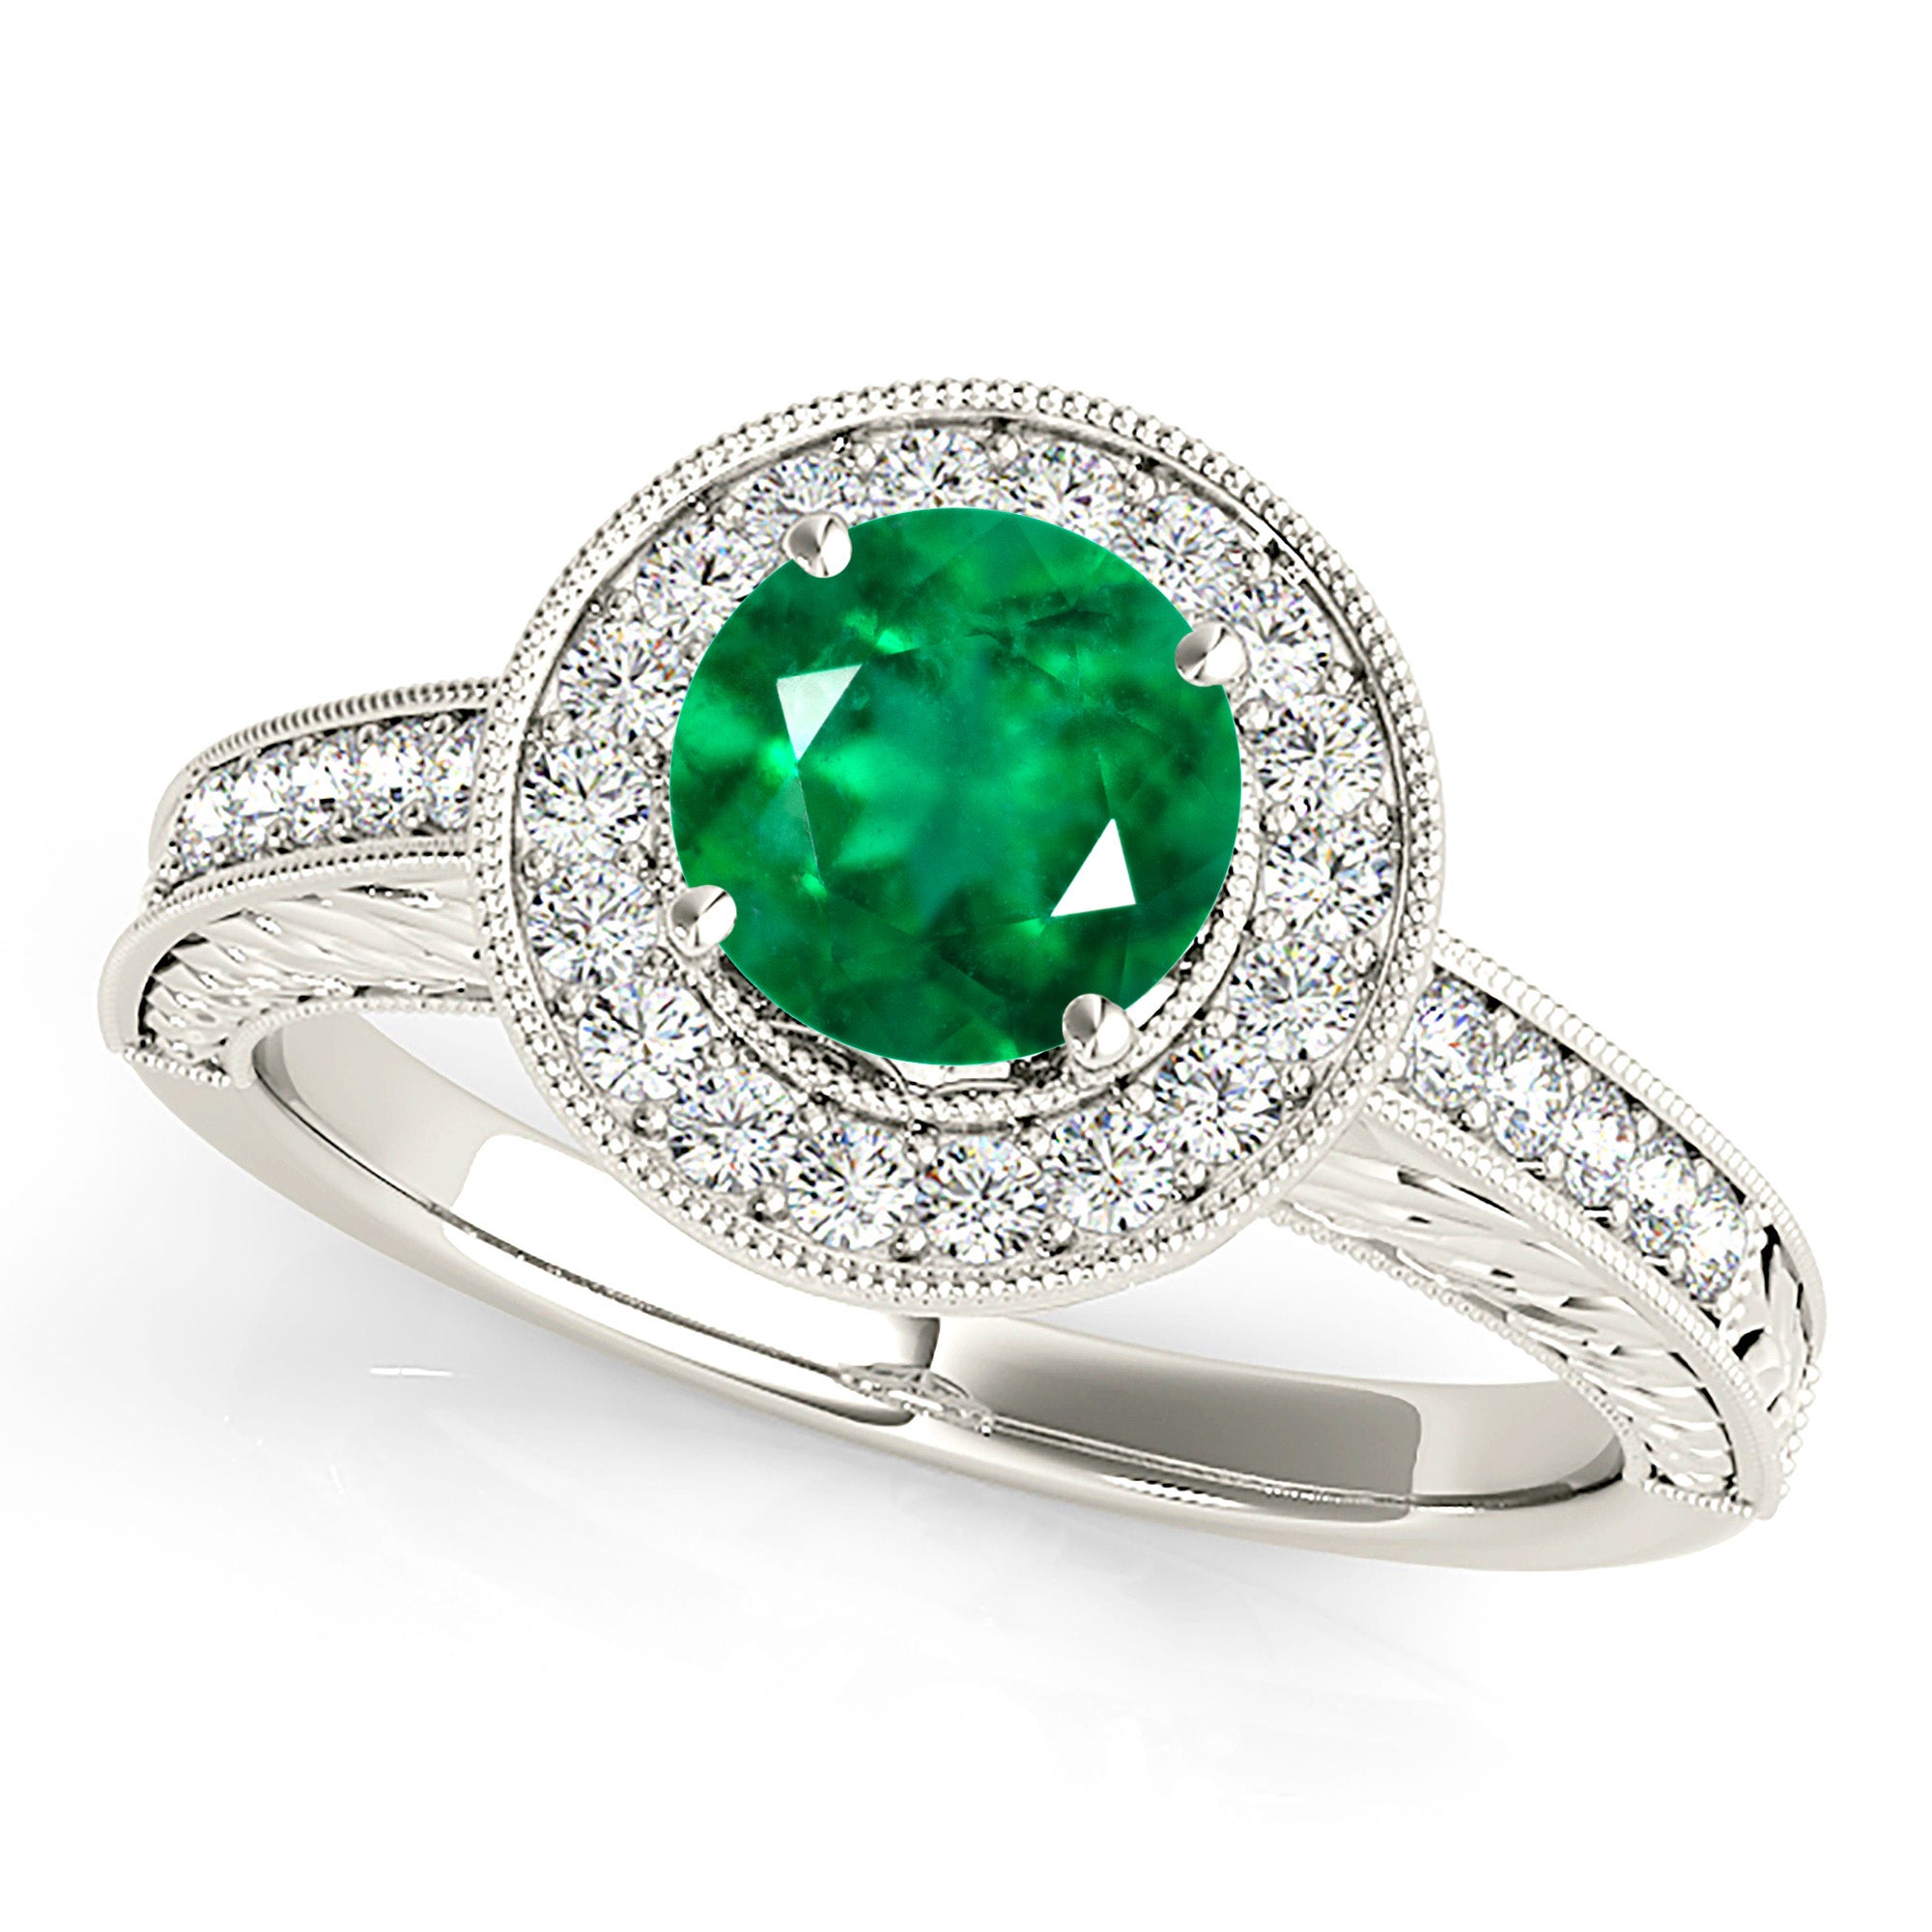 1.68 ct. Genuine Emerald Ring With 0.30 ctw. Diamond Halo and Filigree Milgrain Diamond Band-in 14K/18K White, Yellow, Rose Gold and Platinum - Christmas Jewelry Gift -VIRABYANI